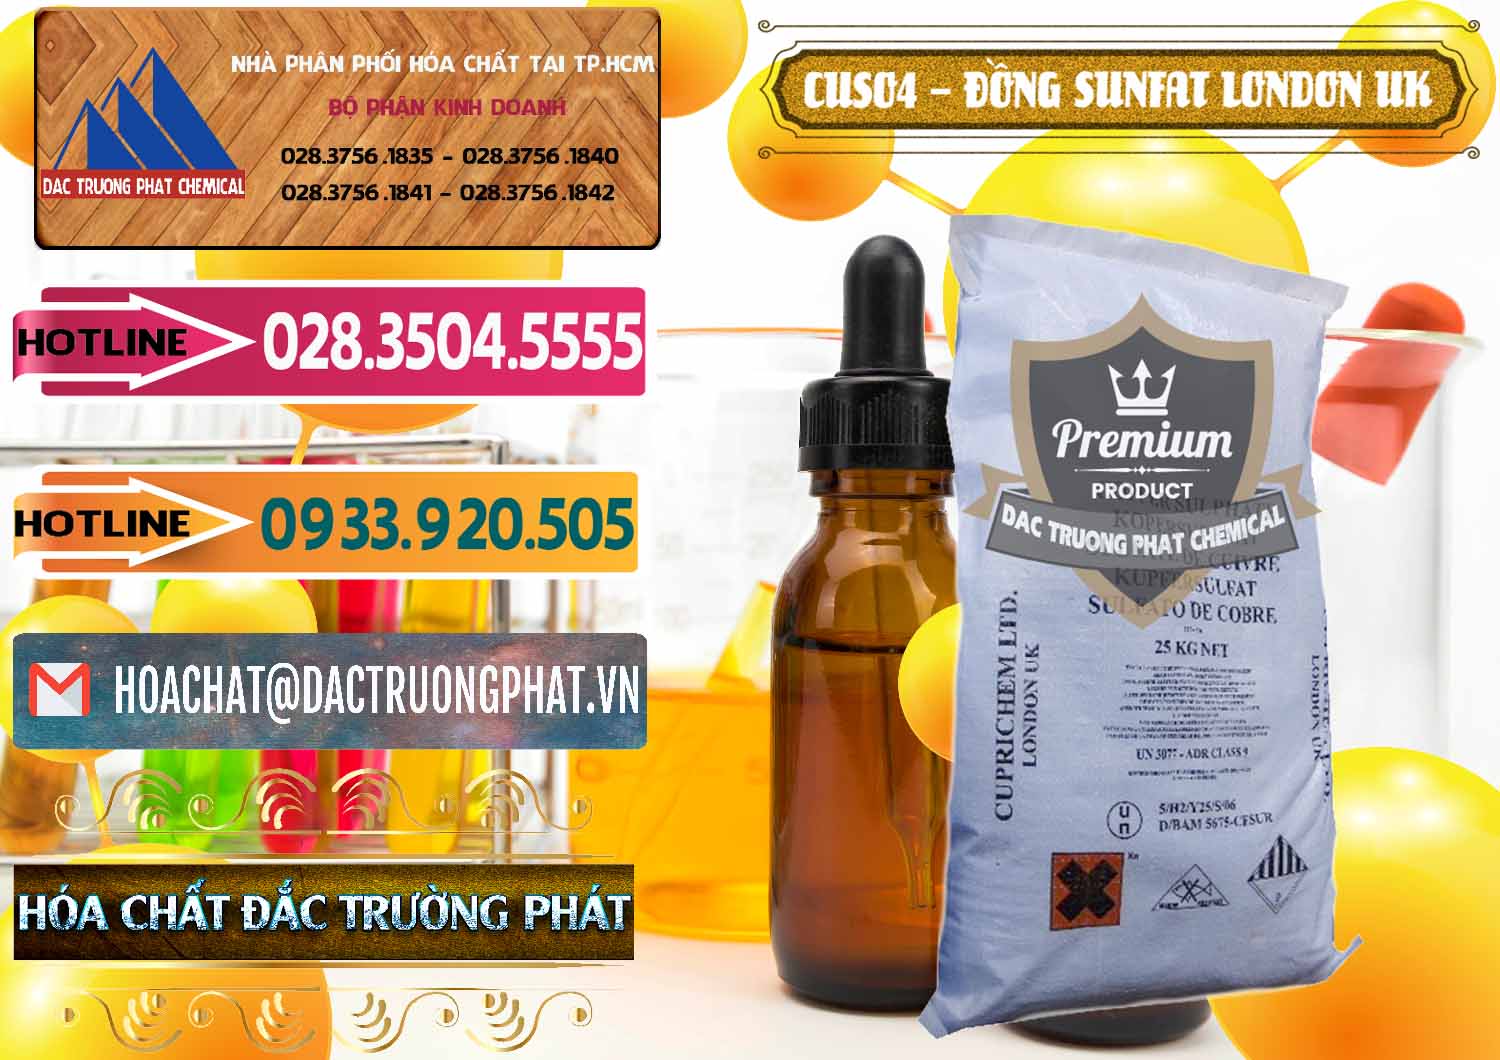 Phân phối & bán CuSO4 – Đồng Sunfat Anh Uk Kingdoms - 0478 - Công ty chuyên bán _ phân phối hóa chất tại TP.HCM - dactruongphat.vn